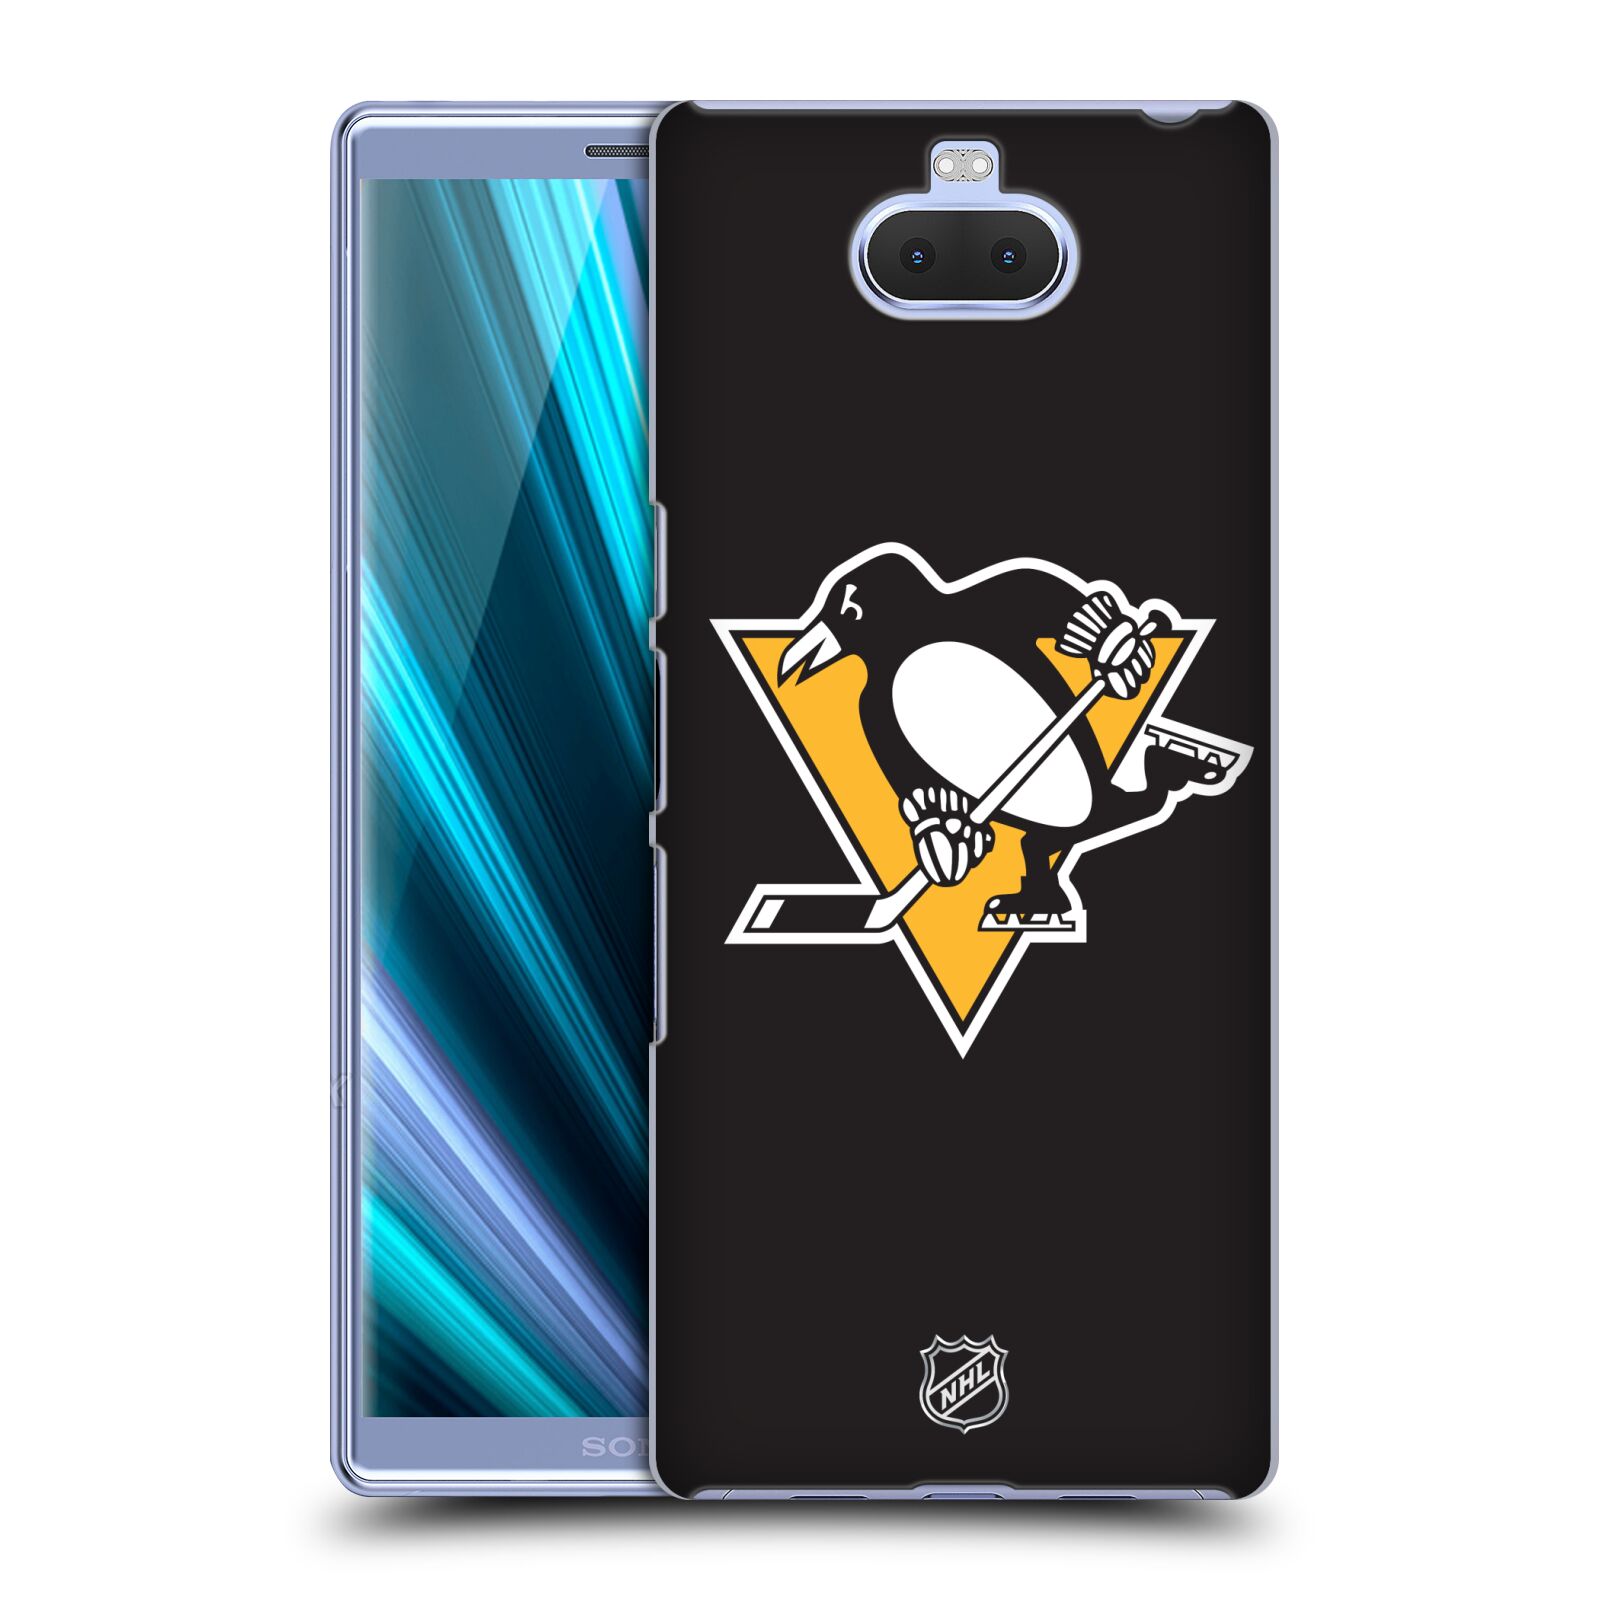 Pouzdro na mobil Sony Xperia 10 - HEAD CASE - Hokej NHL - Pittsburgh Penguins - černé pozadí znak